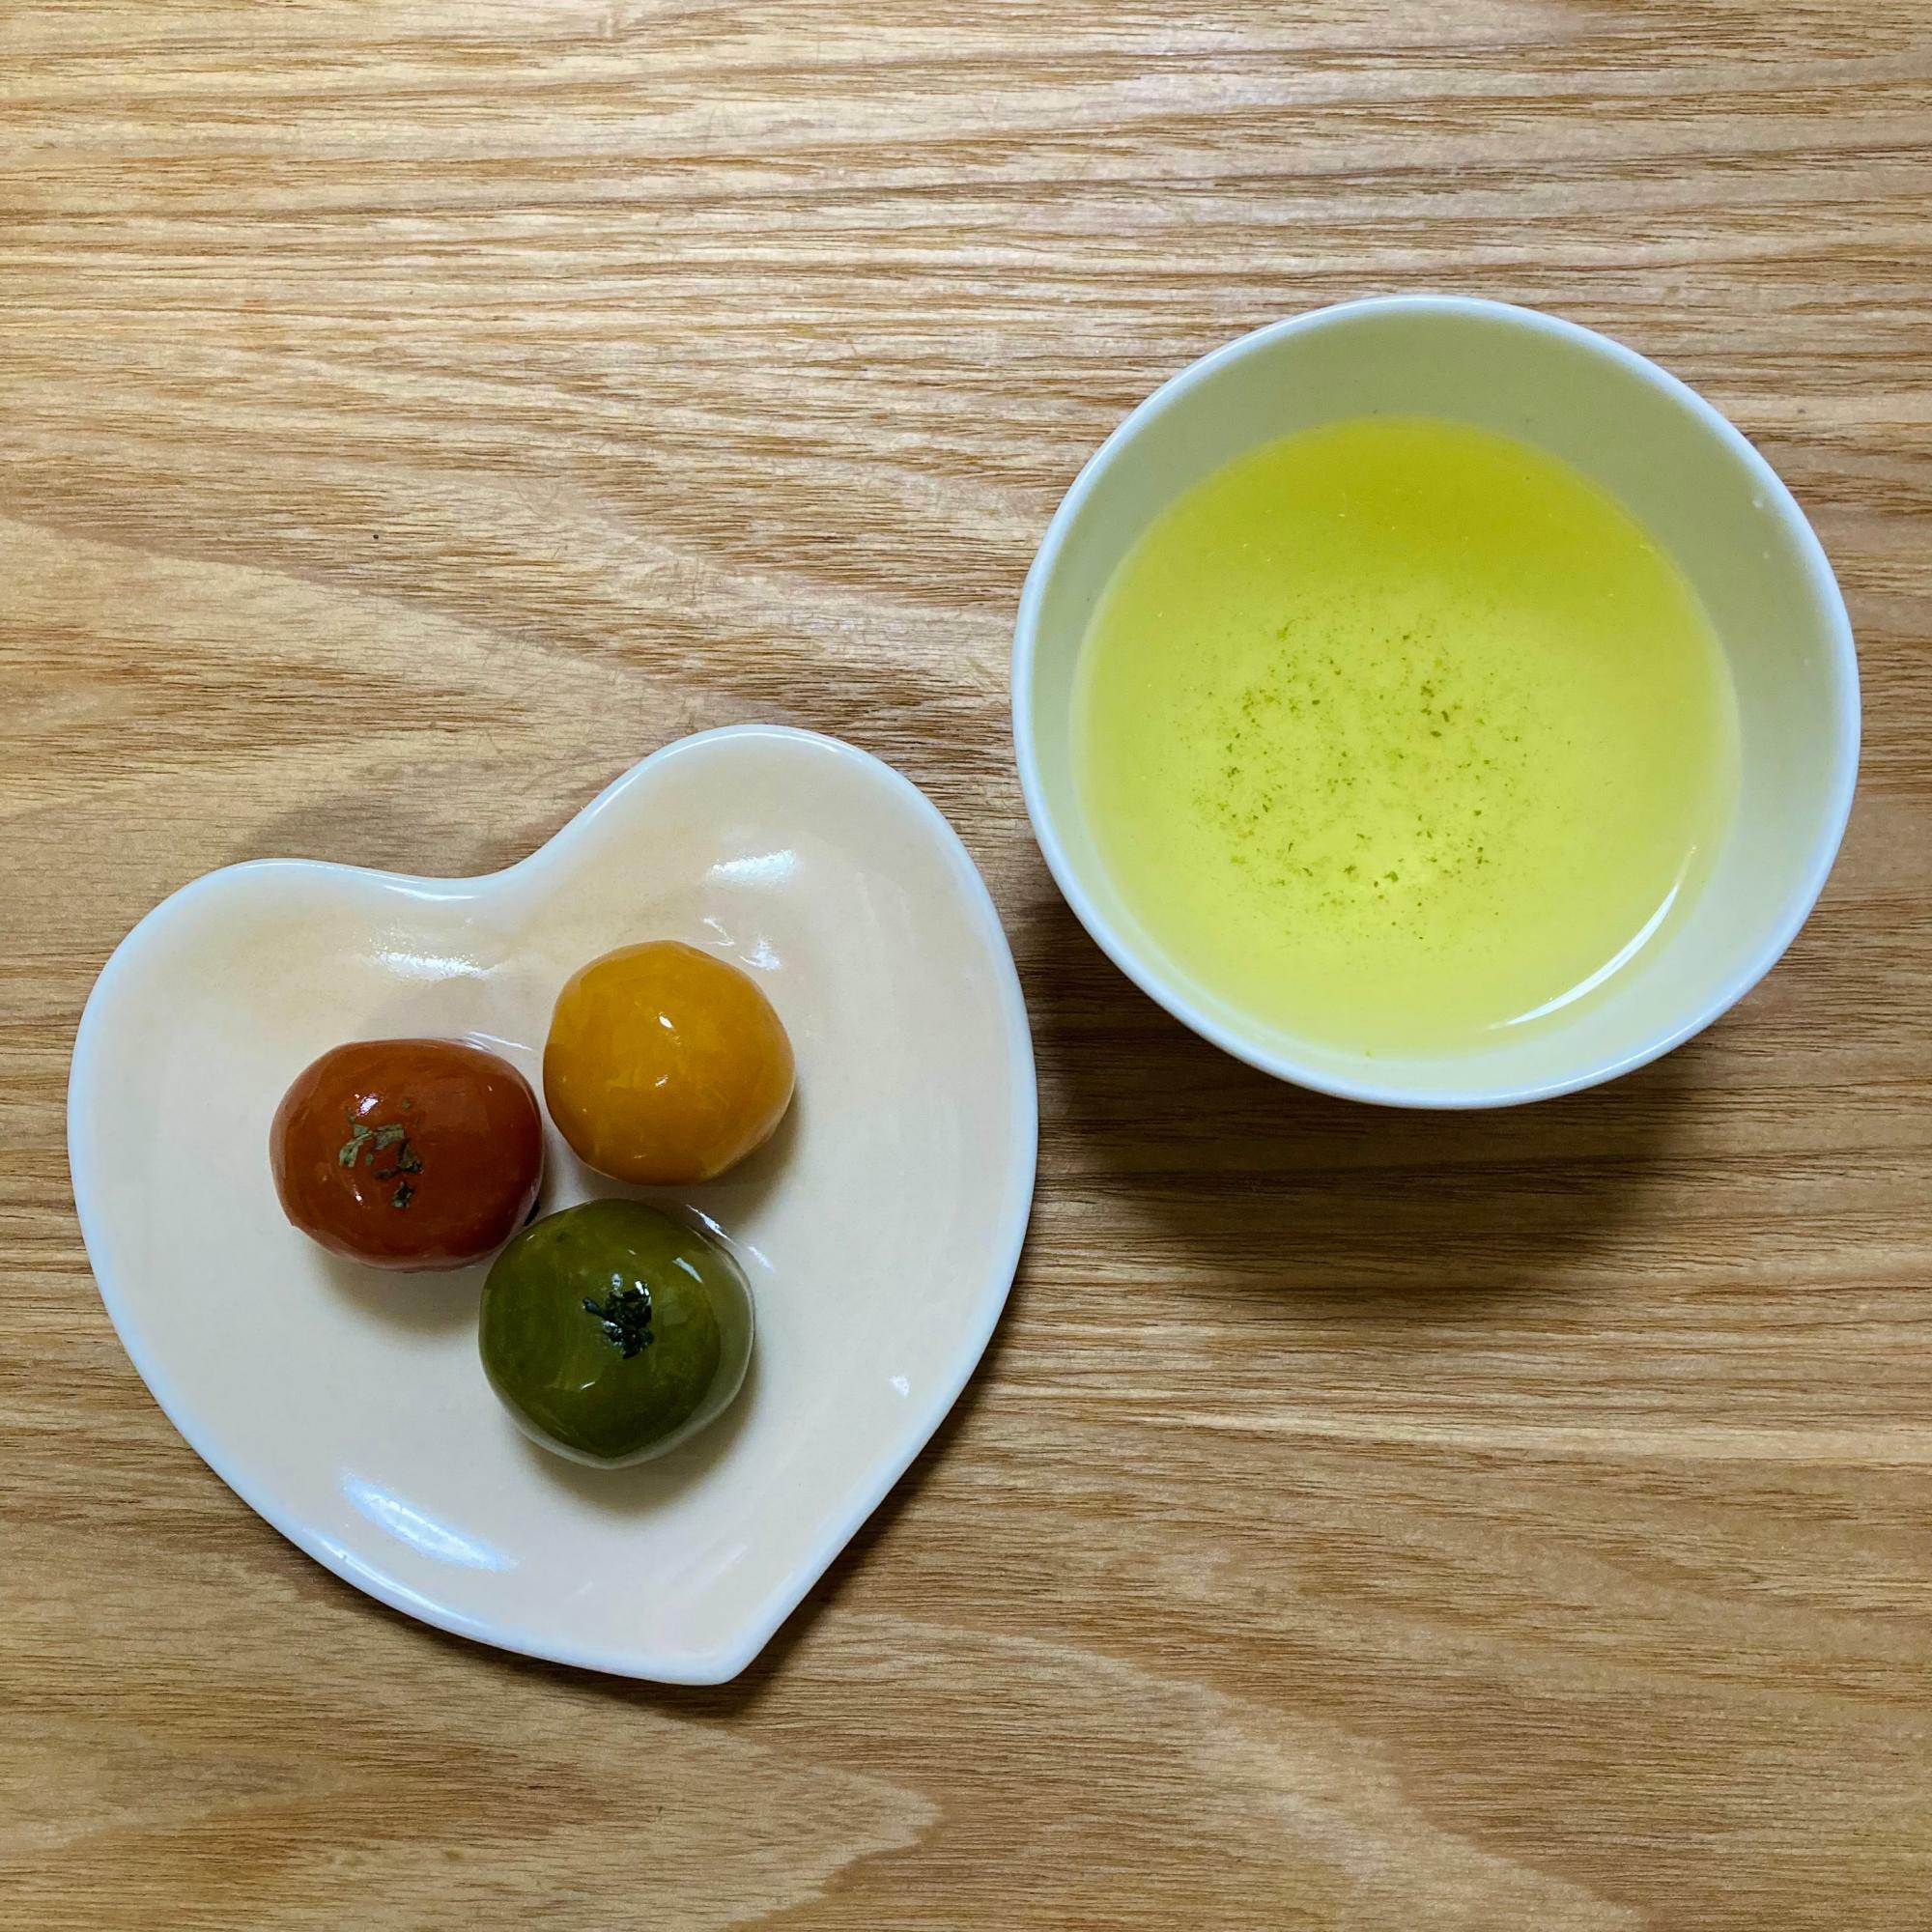 お茶の色は宇治茶の特徴でもある済んだ黄色。お菓子はJR京都伊勢丹で購入した亀屋良長の「旬の烏羽玉」。左がトマト、右があんず、手前が煎茶でお茶によく合います。